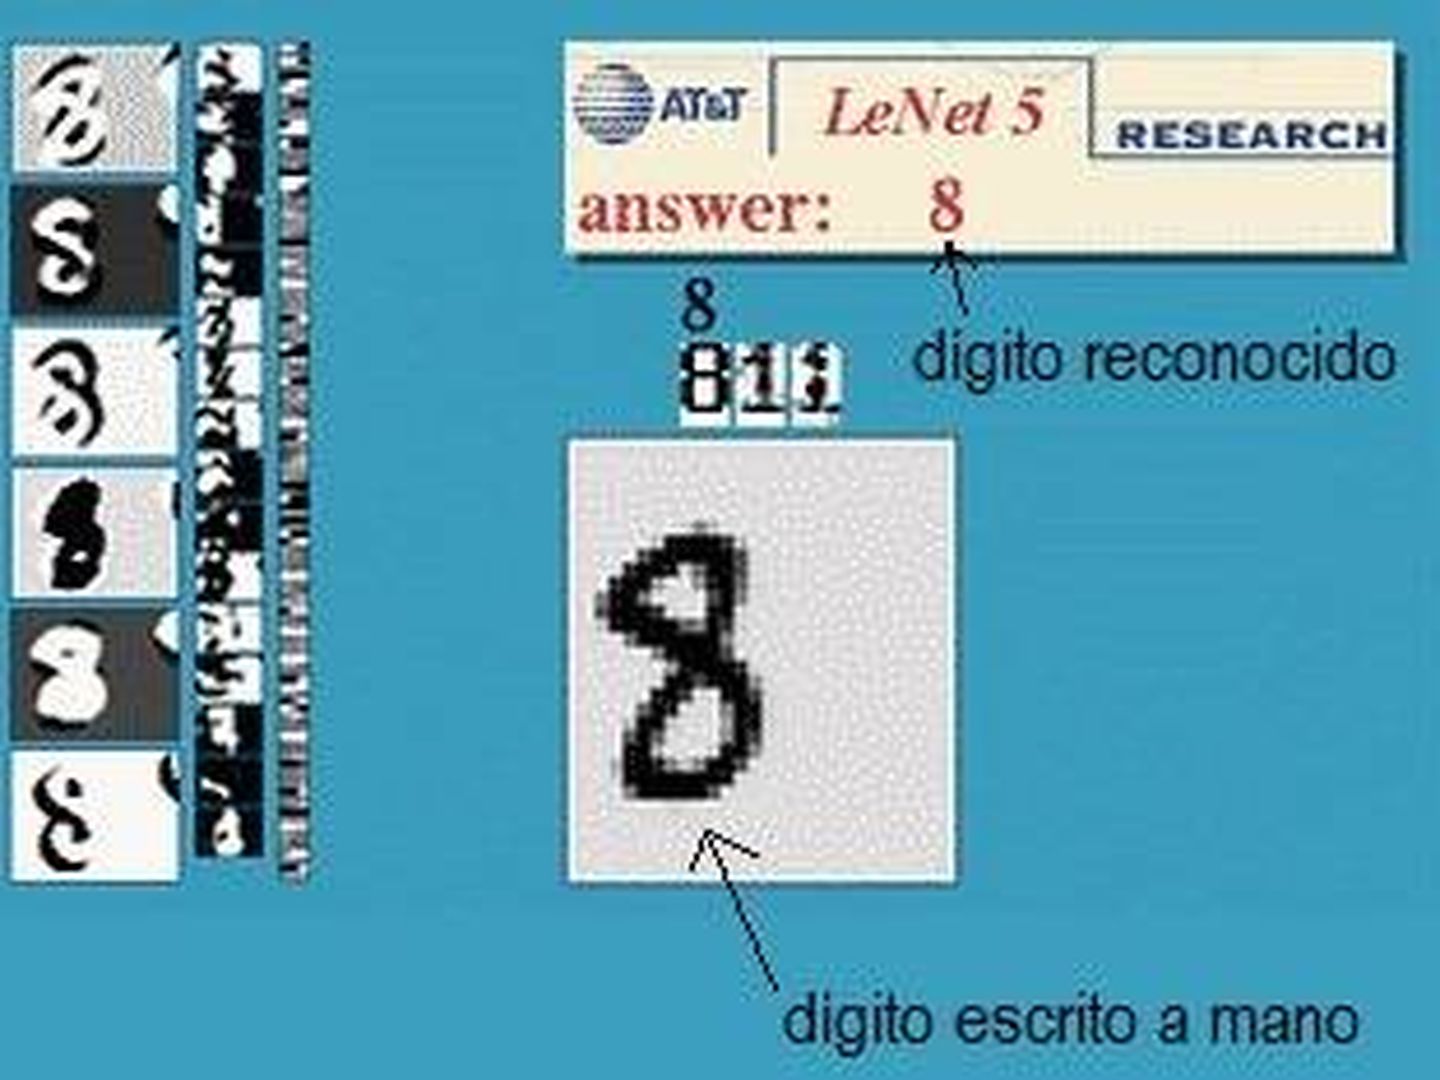 LeNet 5, una aplicación para reconocimiento de dígitos (Yann LeCun)